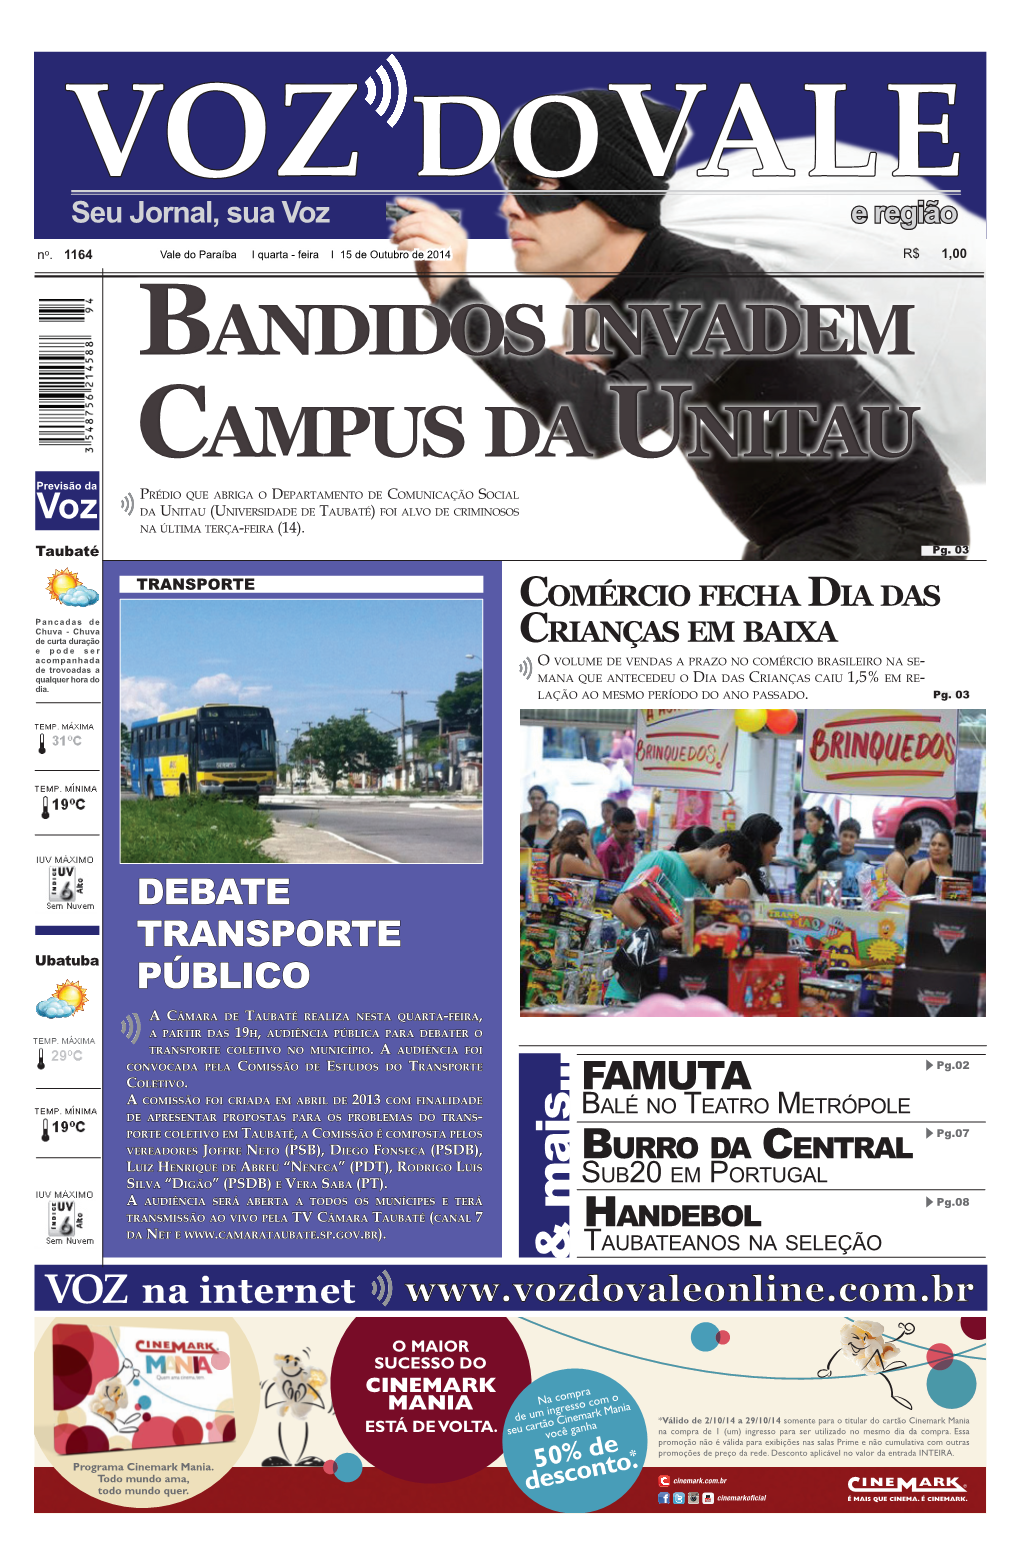 Bandidos Invadem Campus Da Unitau